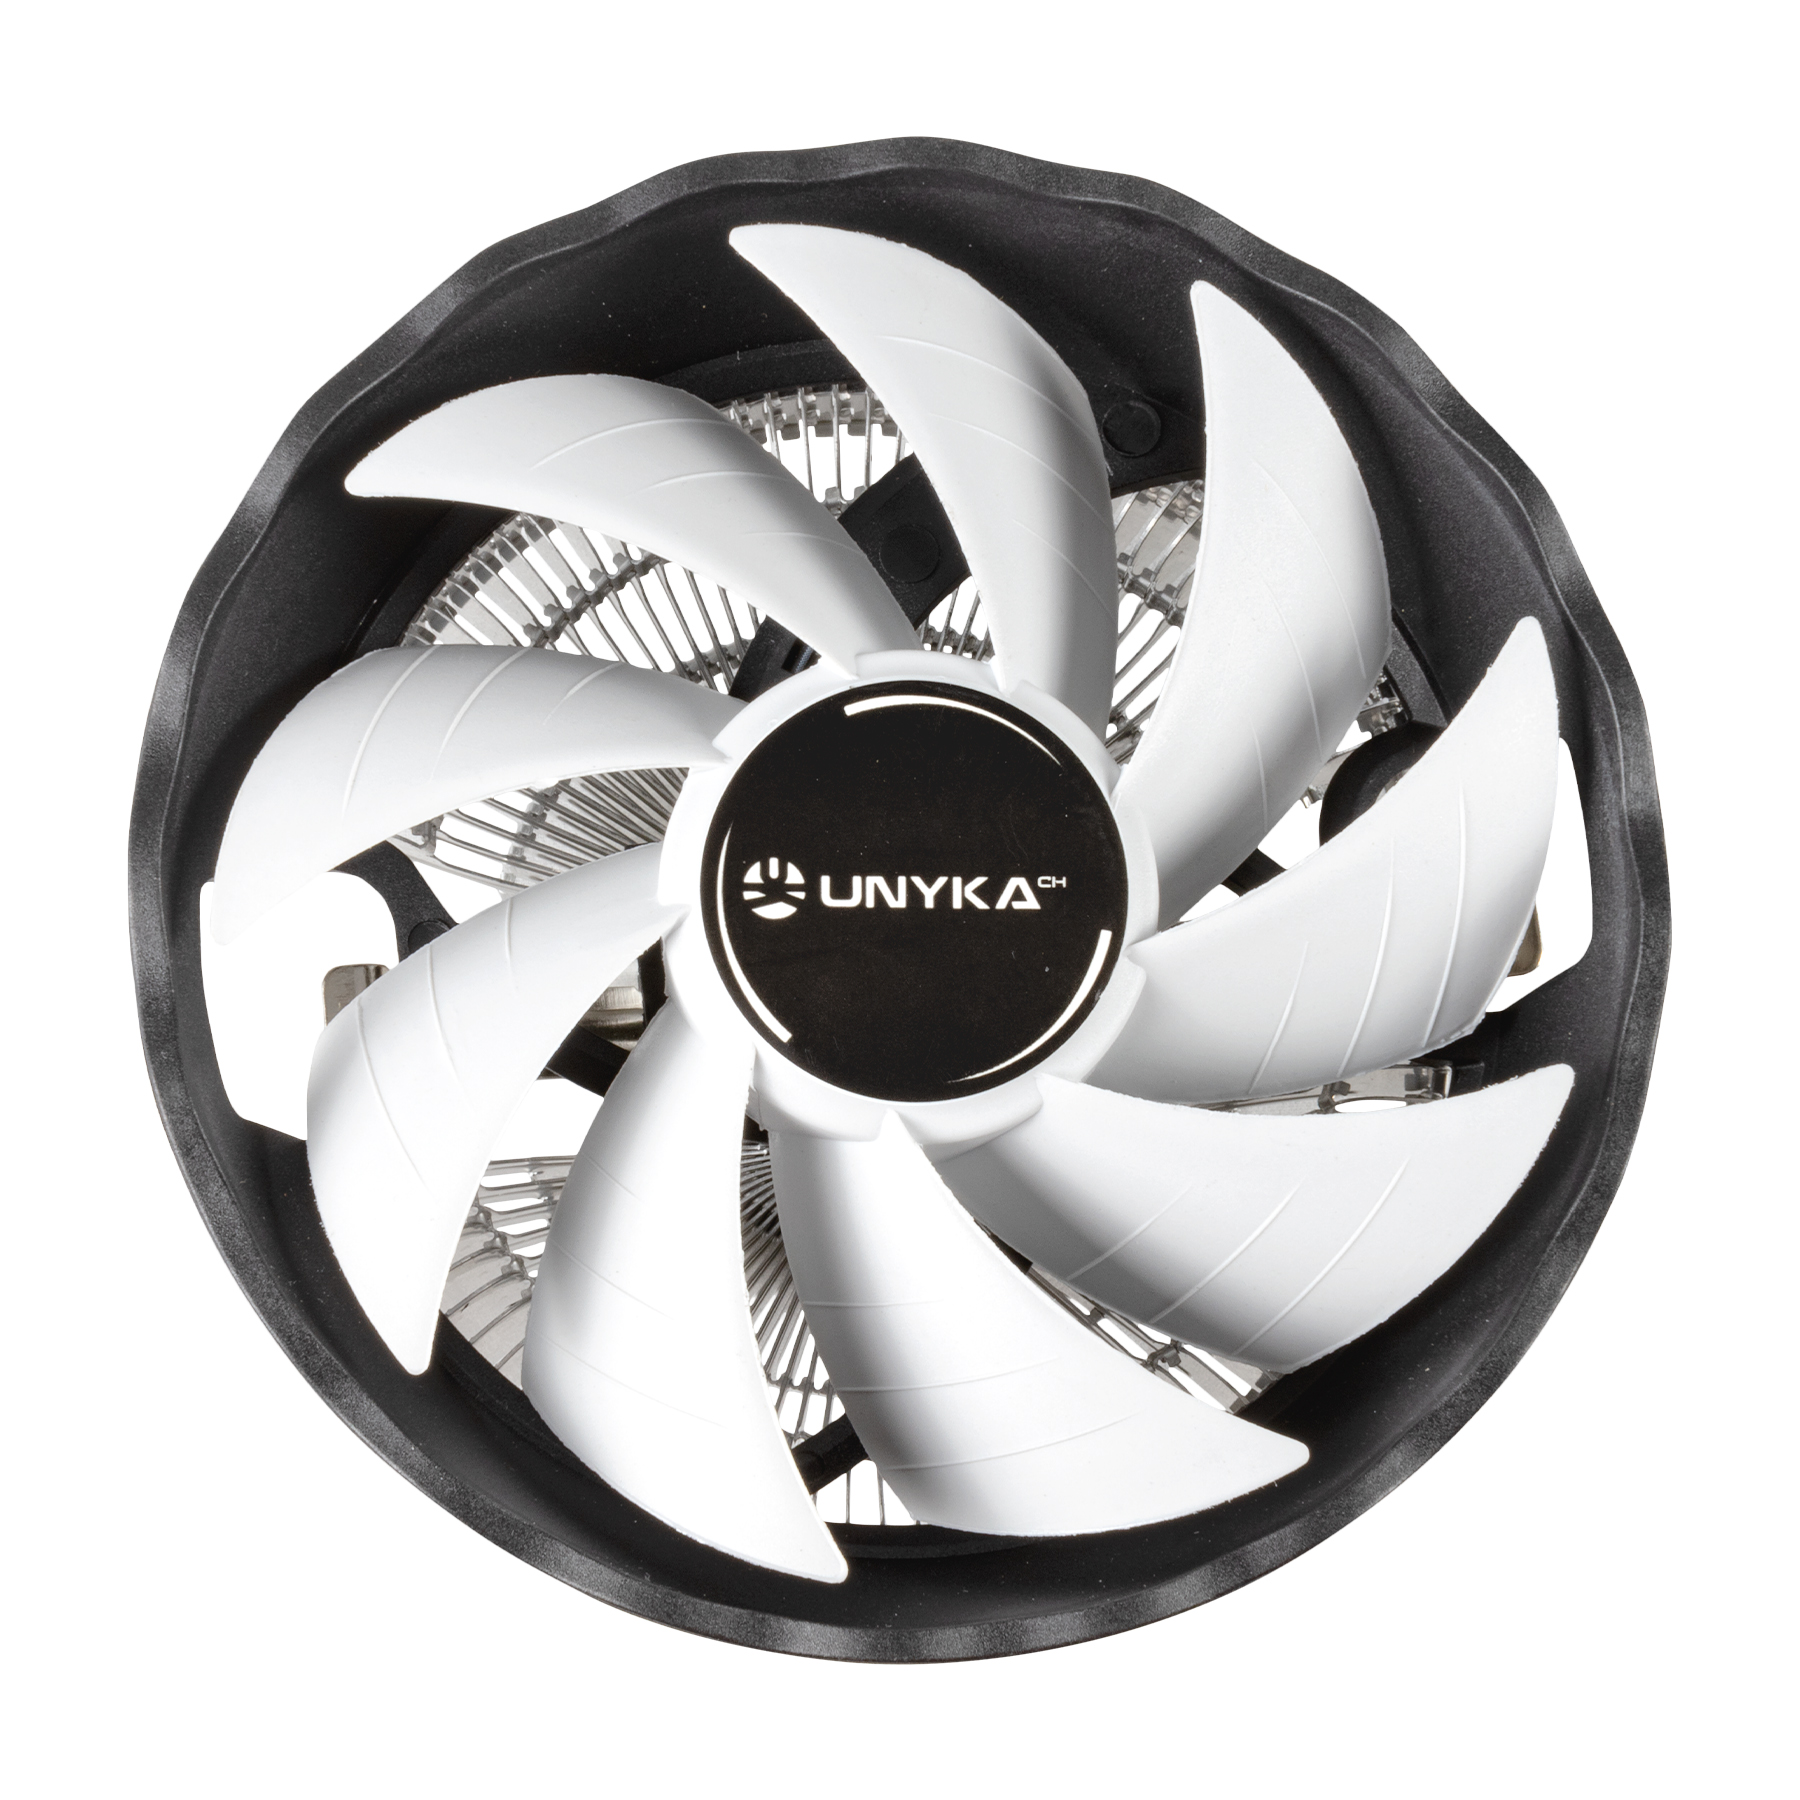 Unykach Jotun DF 120 Blanc Dissipateur thermique compact pour processeur 120 mm Profil bas - Vitesse maximale. 1600rpm - Couleur Blanc/Noir